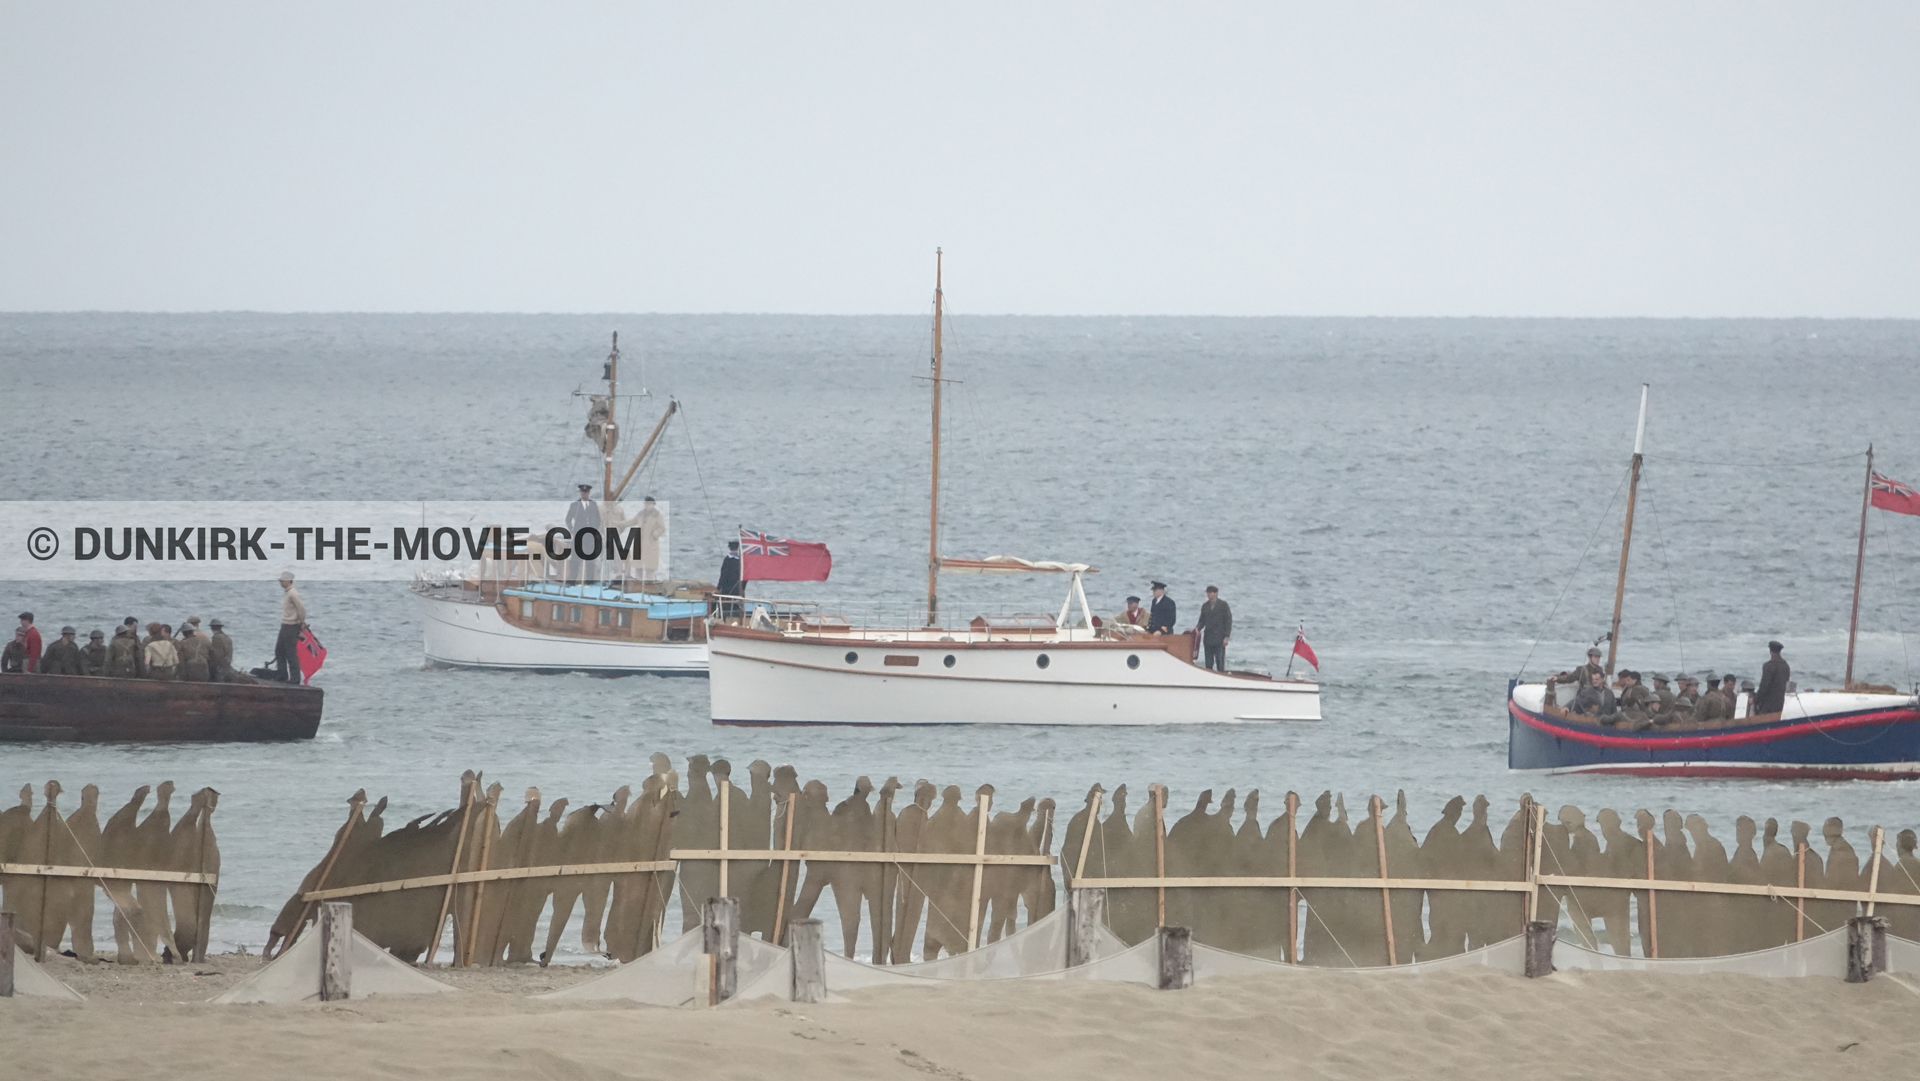 Fotos con barco, decoración, playa, del bote salvavidas Henry Finlay,  durante el rodaje de la película Dunkerque de Nolan